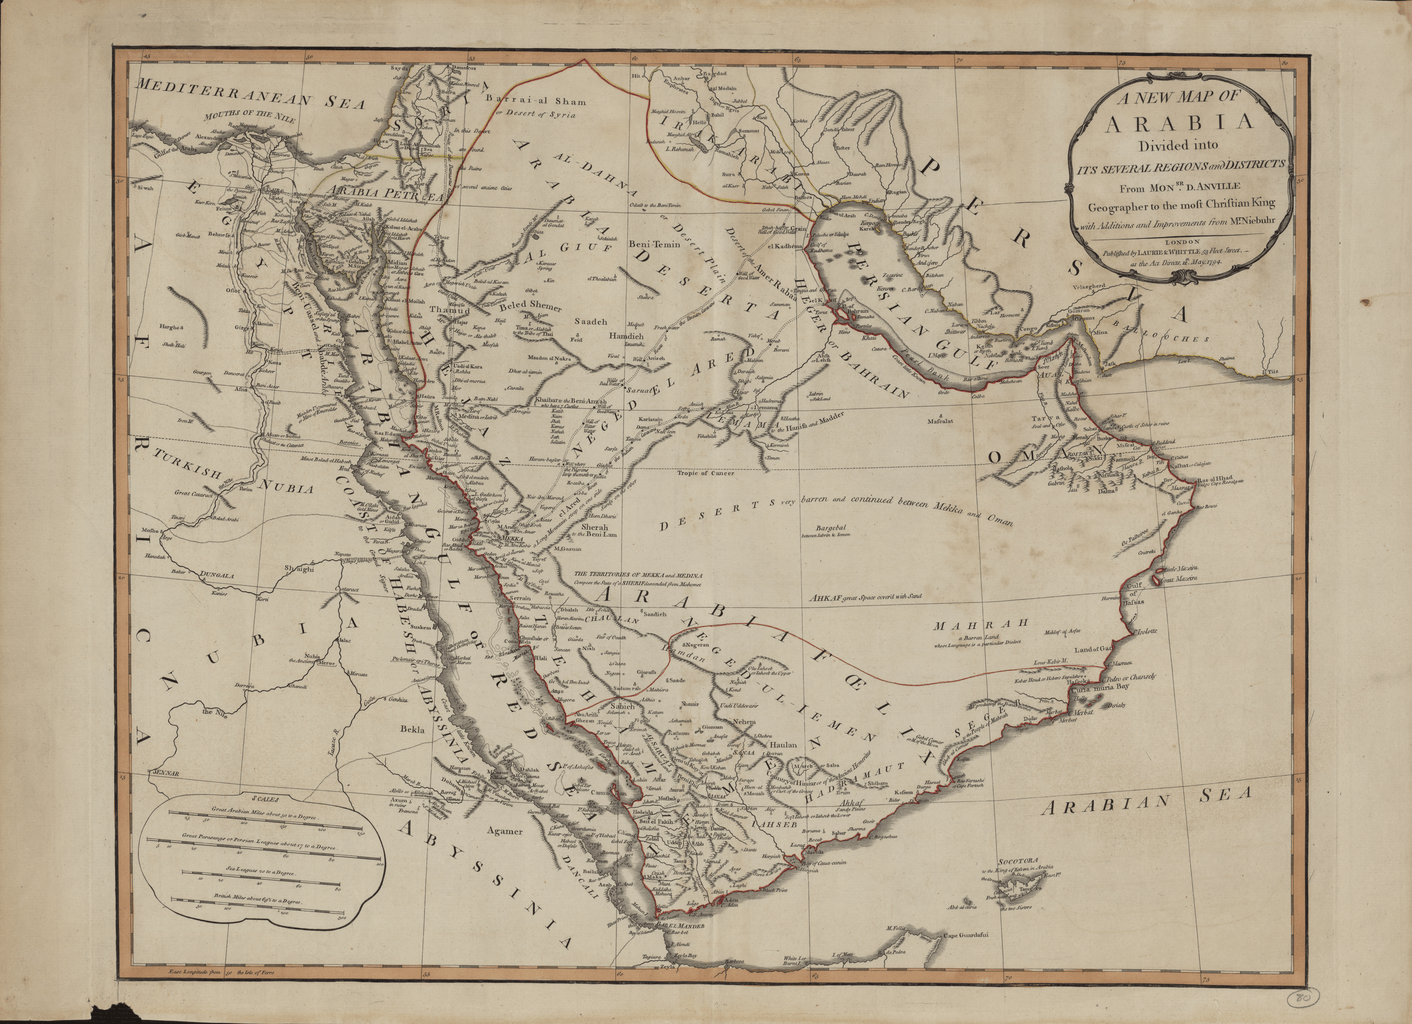 خريطة شبه الجزيرة العربية